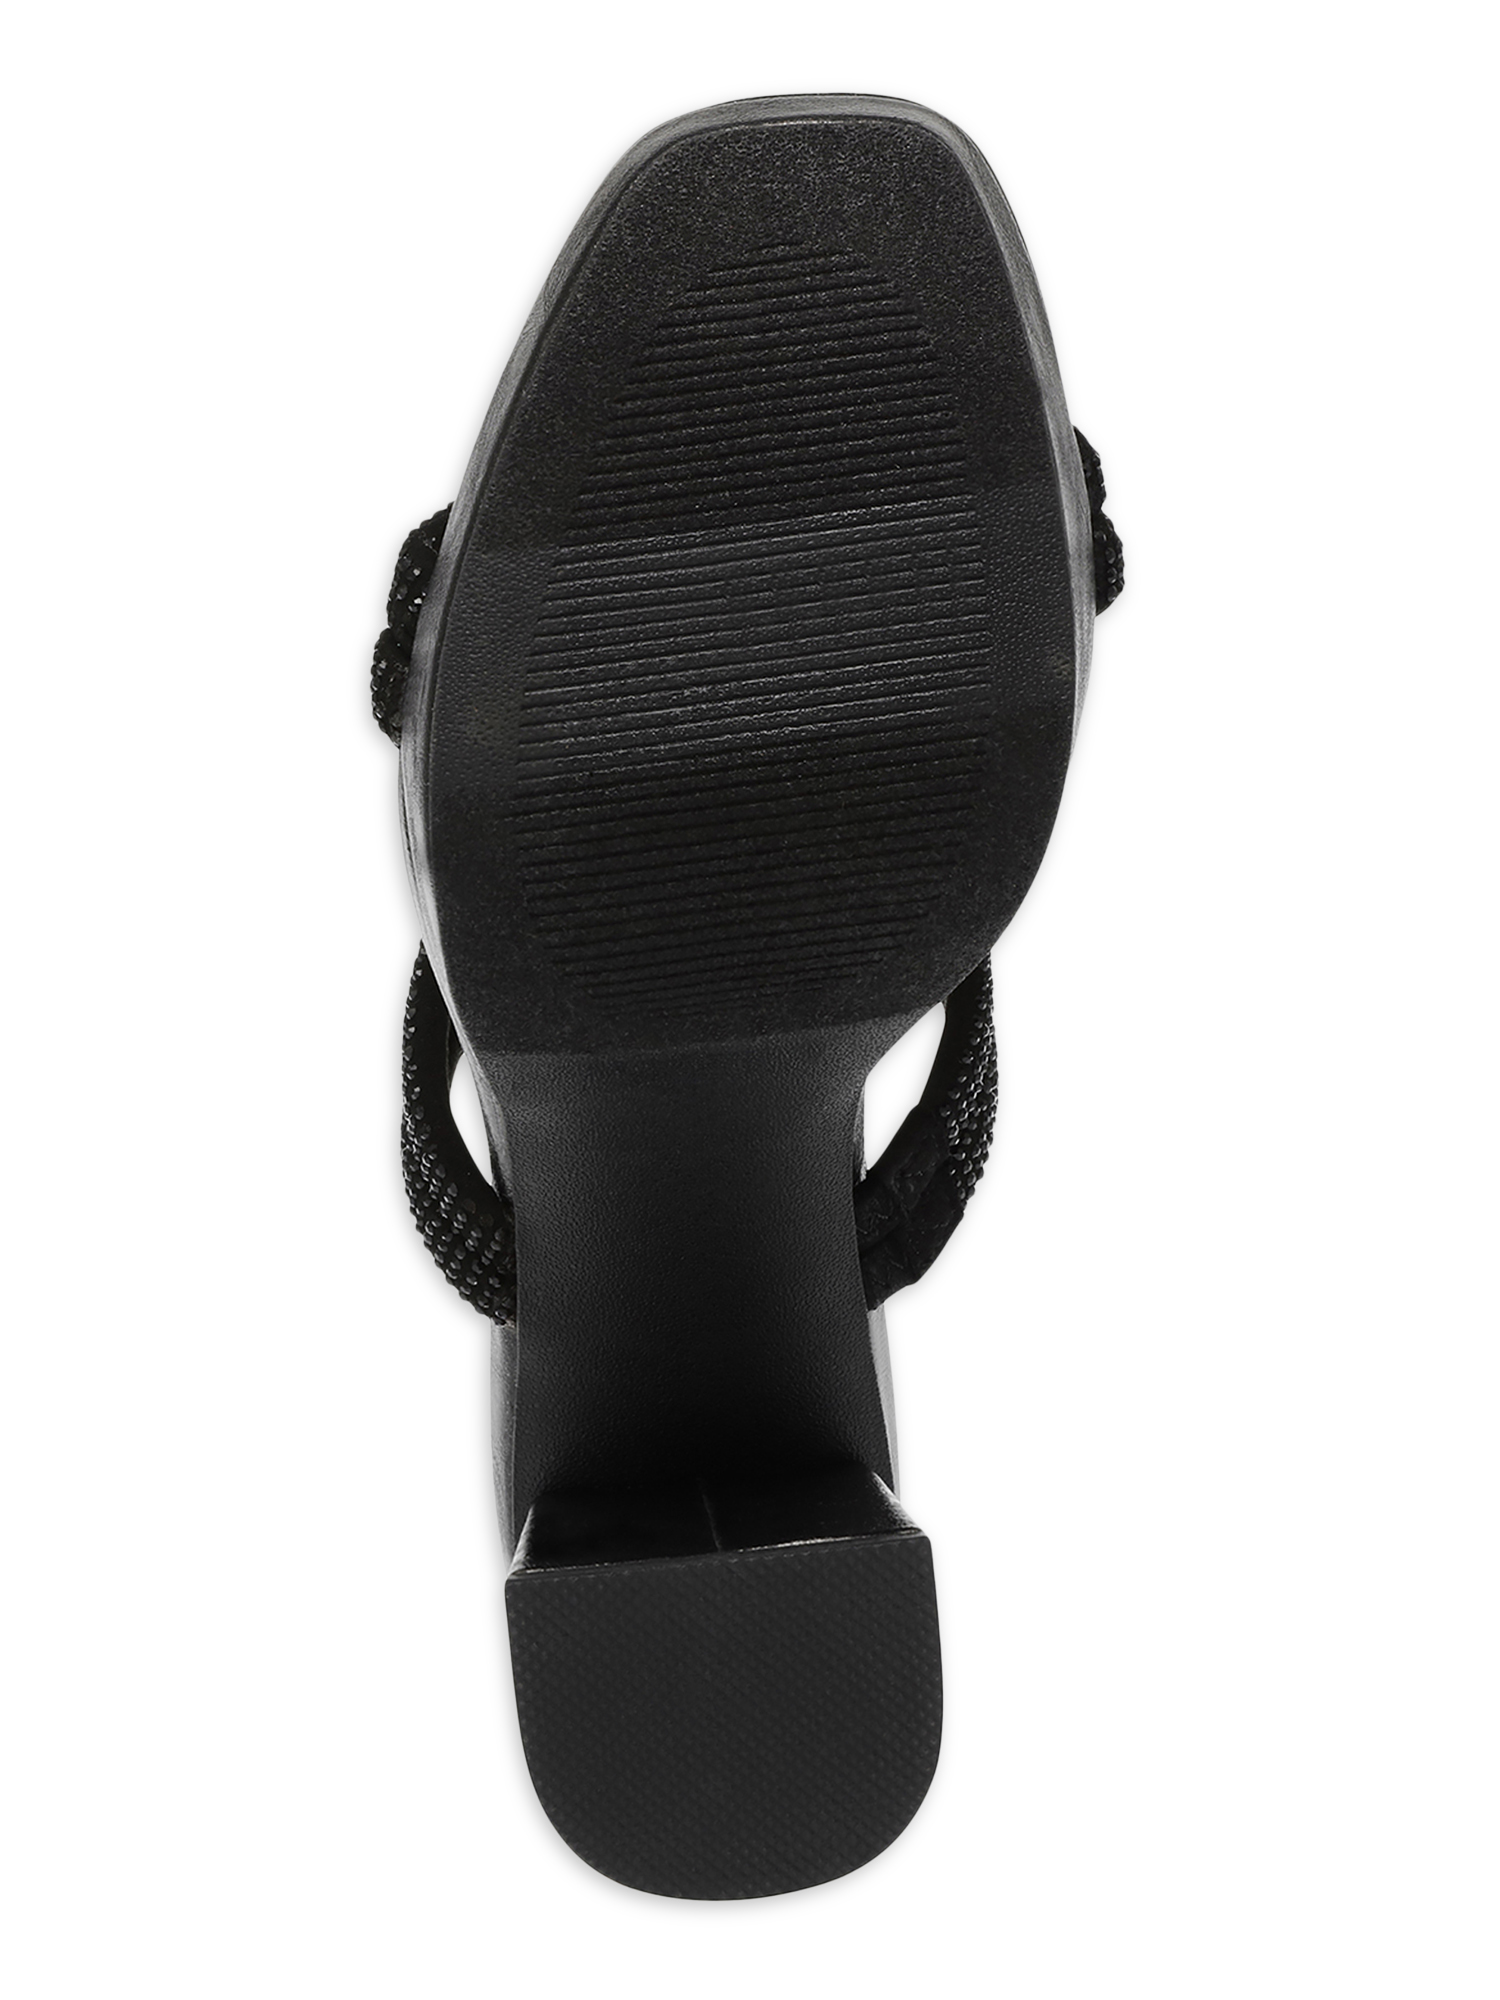 DV Dolce Vita Women's Persia Platform Heeled Sandal - image 5 of 6